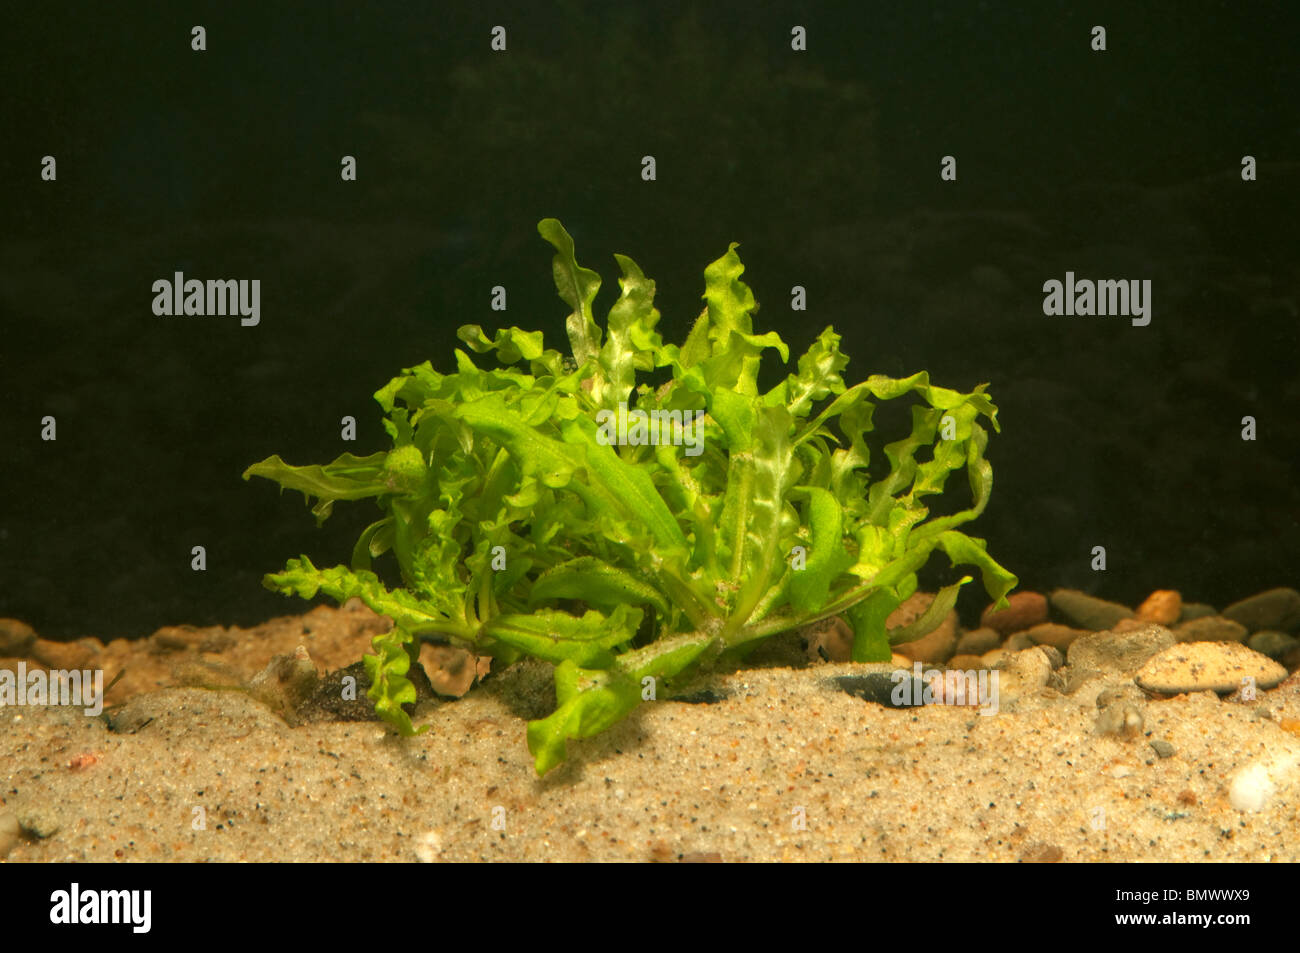 Marimo Moss Ball Filter Live Aquarium Plants Algae Fish Shrimp Tank  Ornament Decor Seaweed Ball Landscape Aquarium Accessories